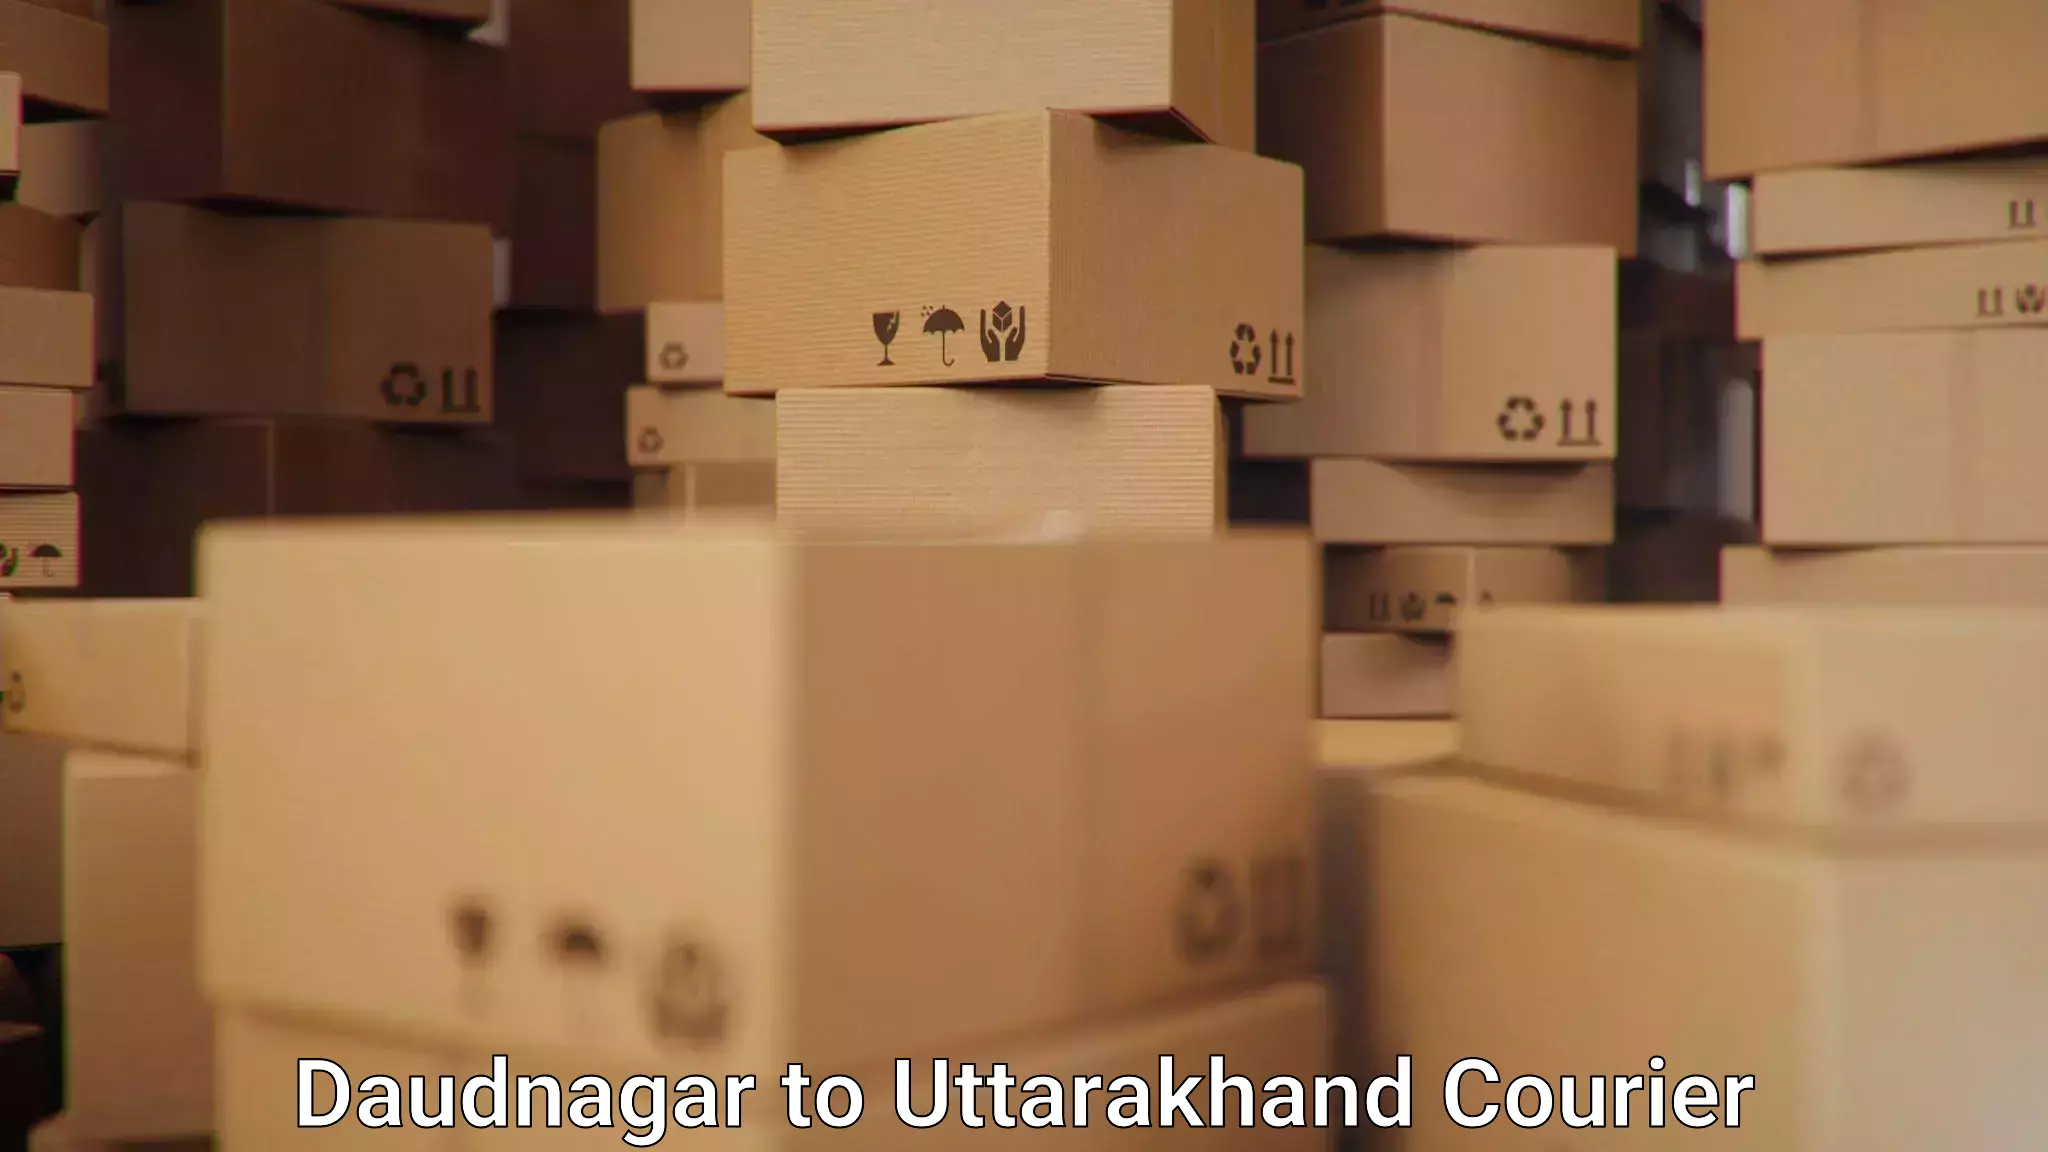 Efficient parcel service Daudnagar to Roorkee